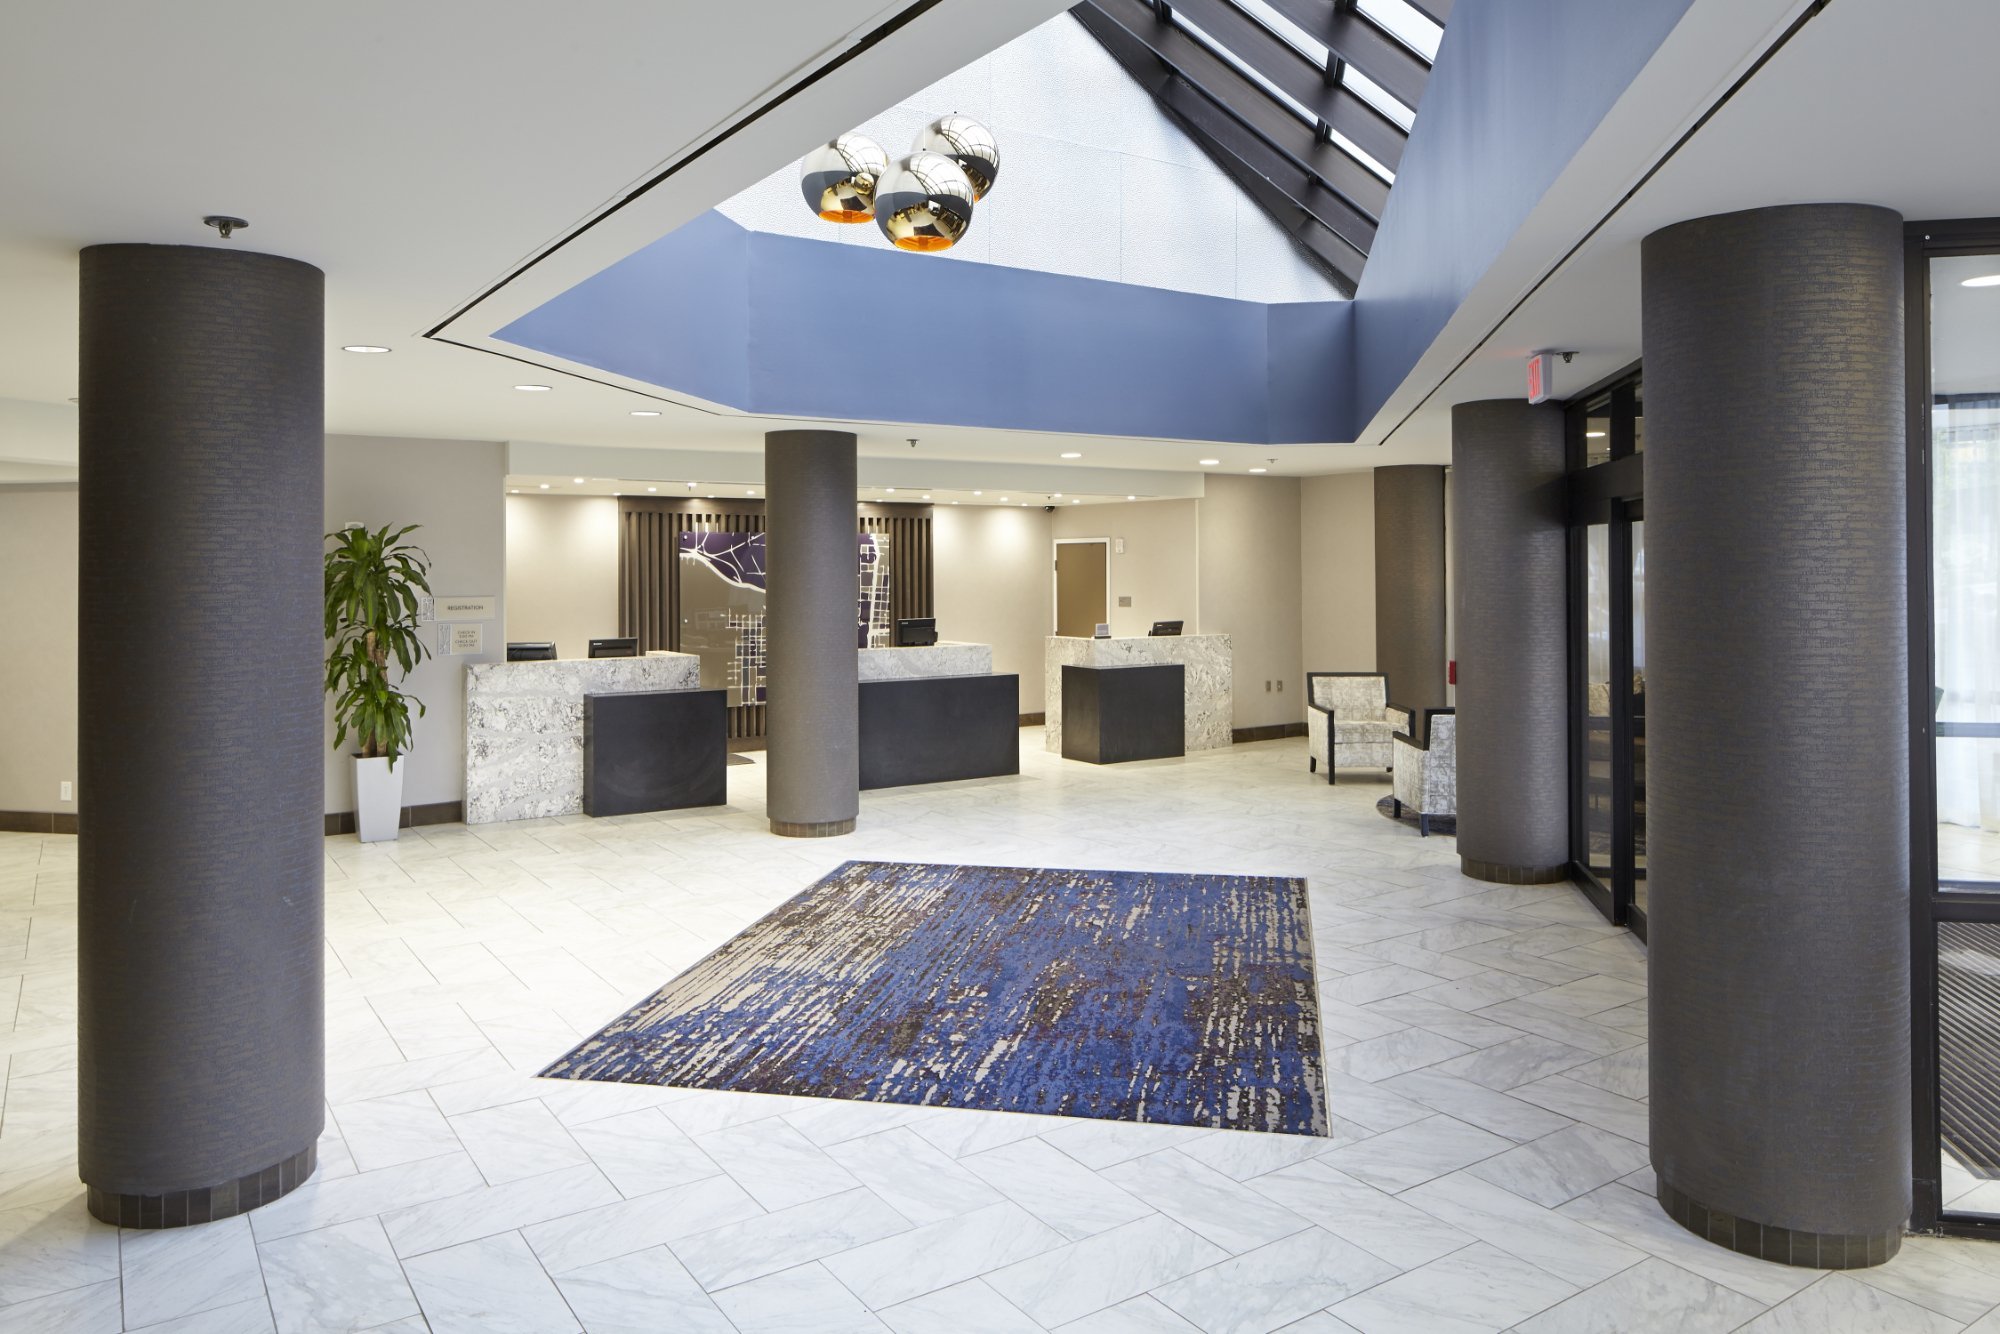 Photo of Embassy Suites by Hilton Atlanta Galleria, Atlanta, GA